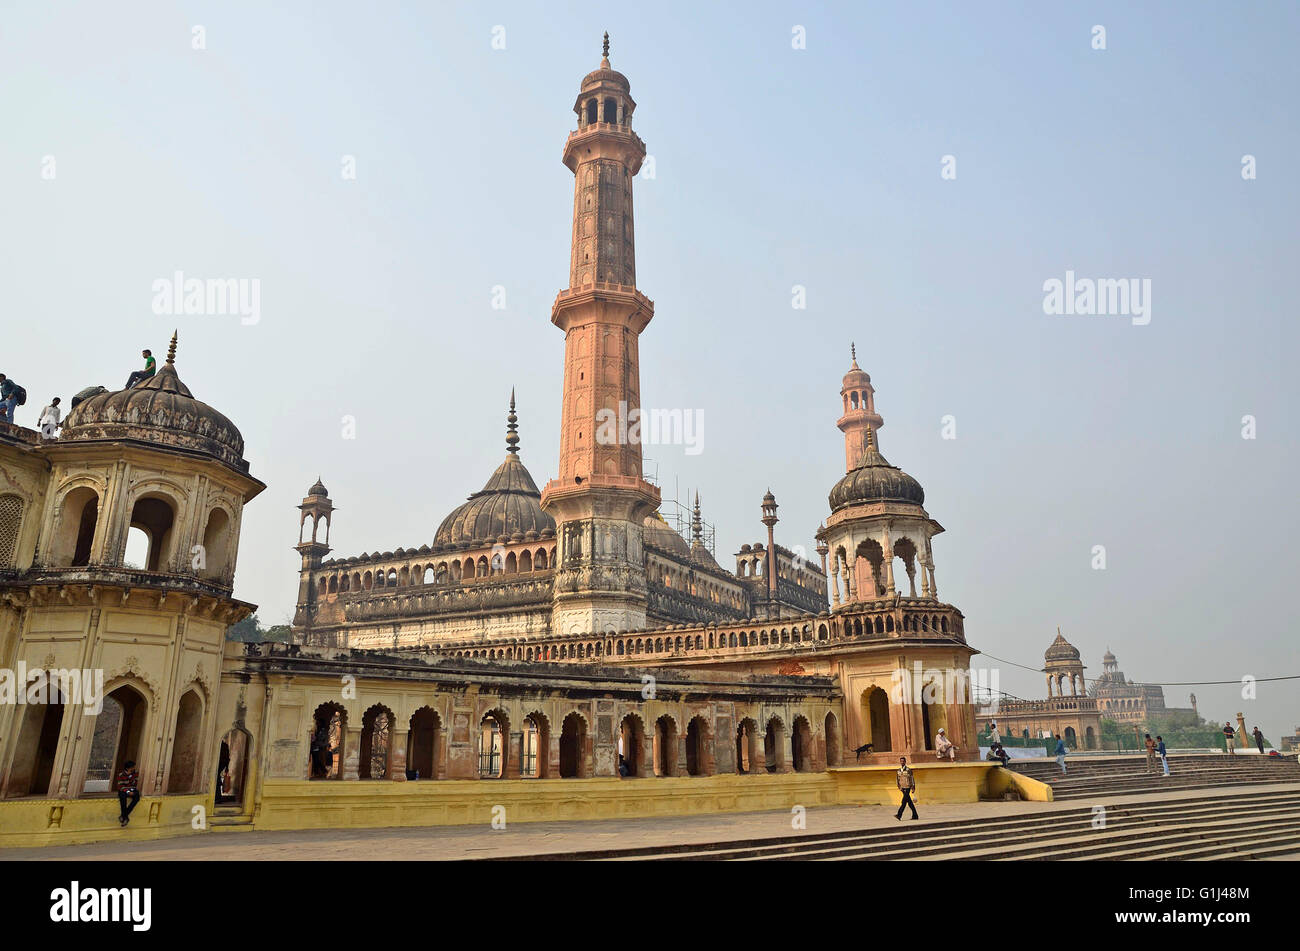 Mosquée Asifi, Bara Imambara complexe, Lucknow, Uttar Pradesh, Inde Banque D'Images